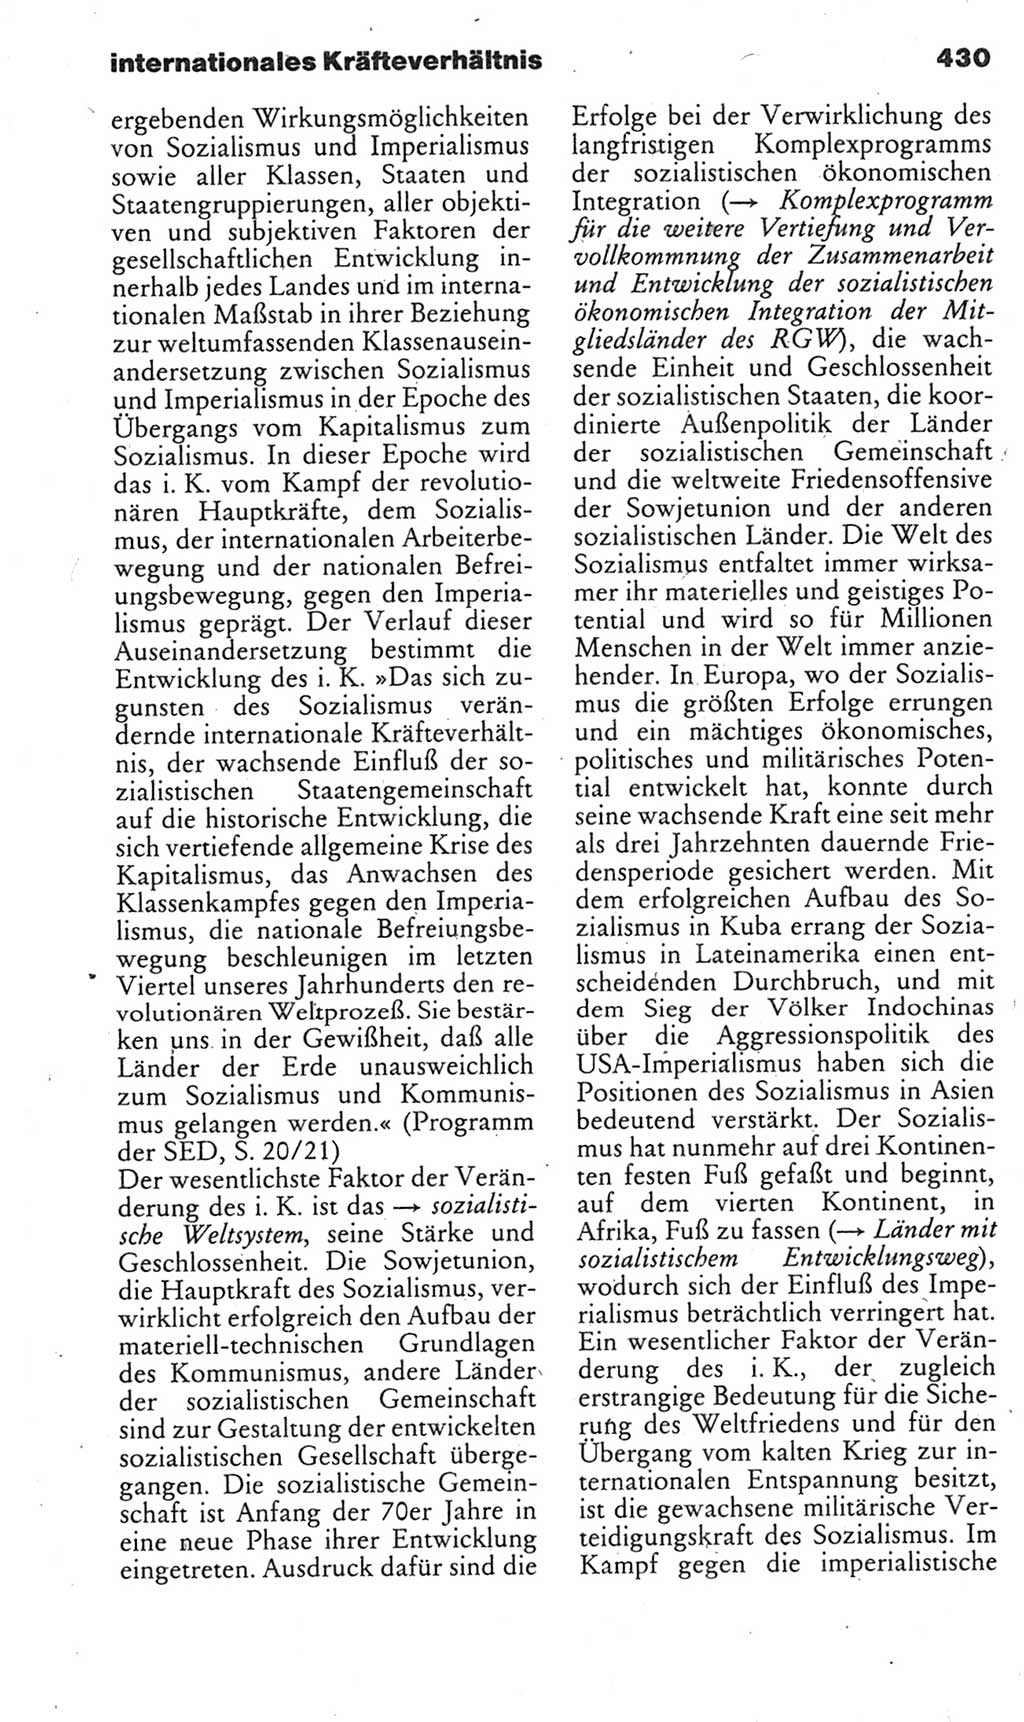 Kleines politisches Wörterbuch [Deutsche Demokratische Republik (DDR)] 1985, Seite 430 (Kl. pol. Wb. DDR 1985, S. 430)